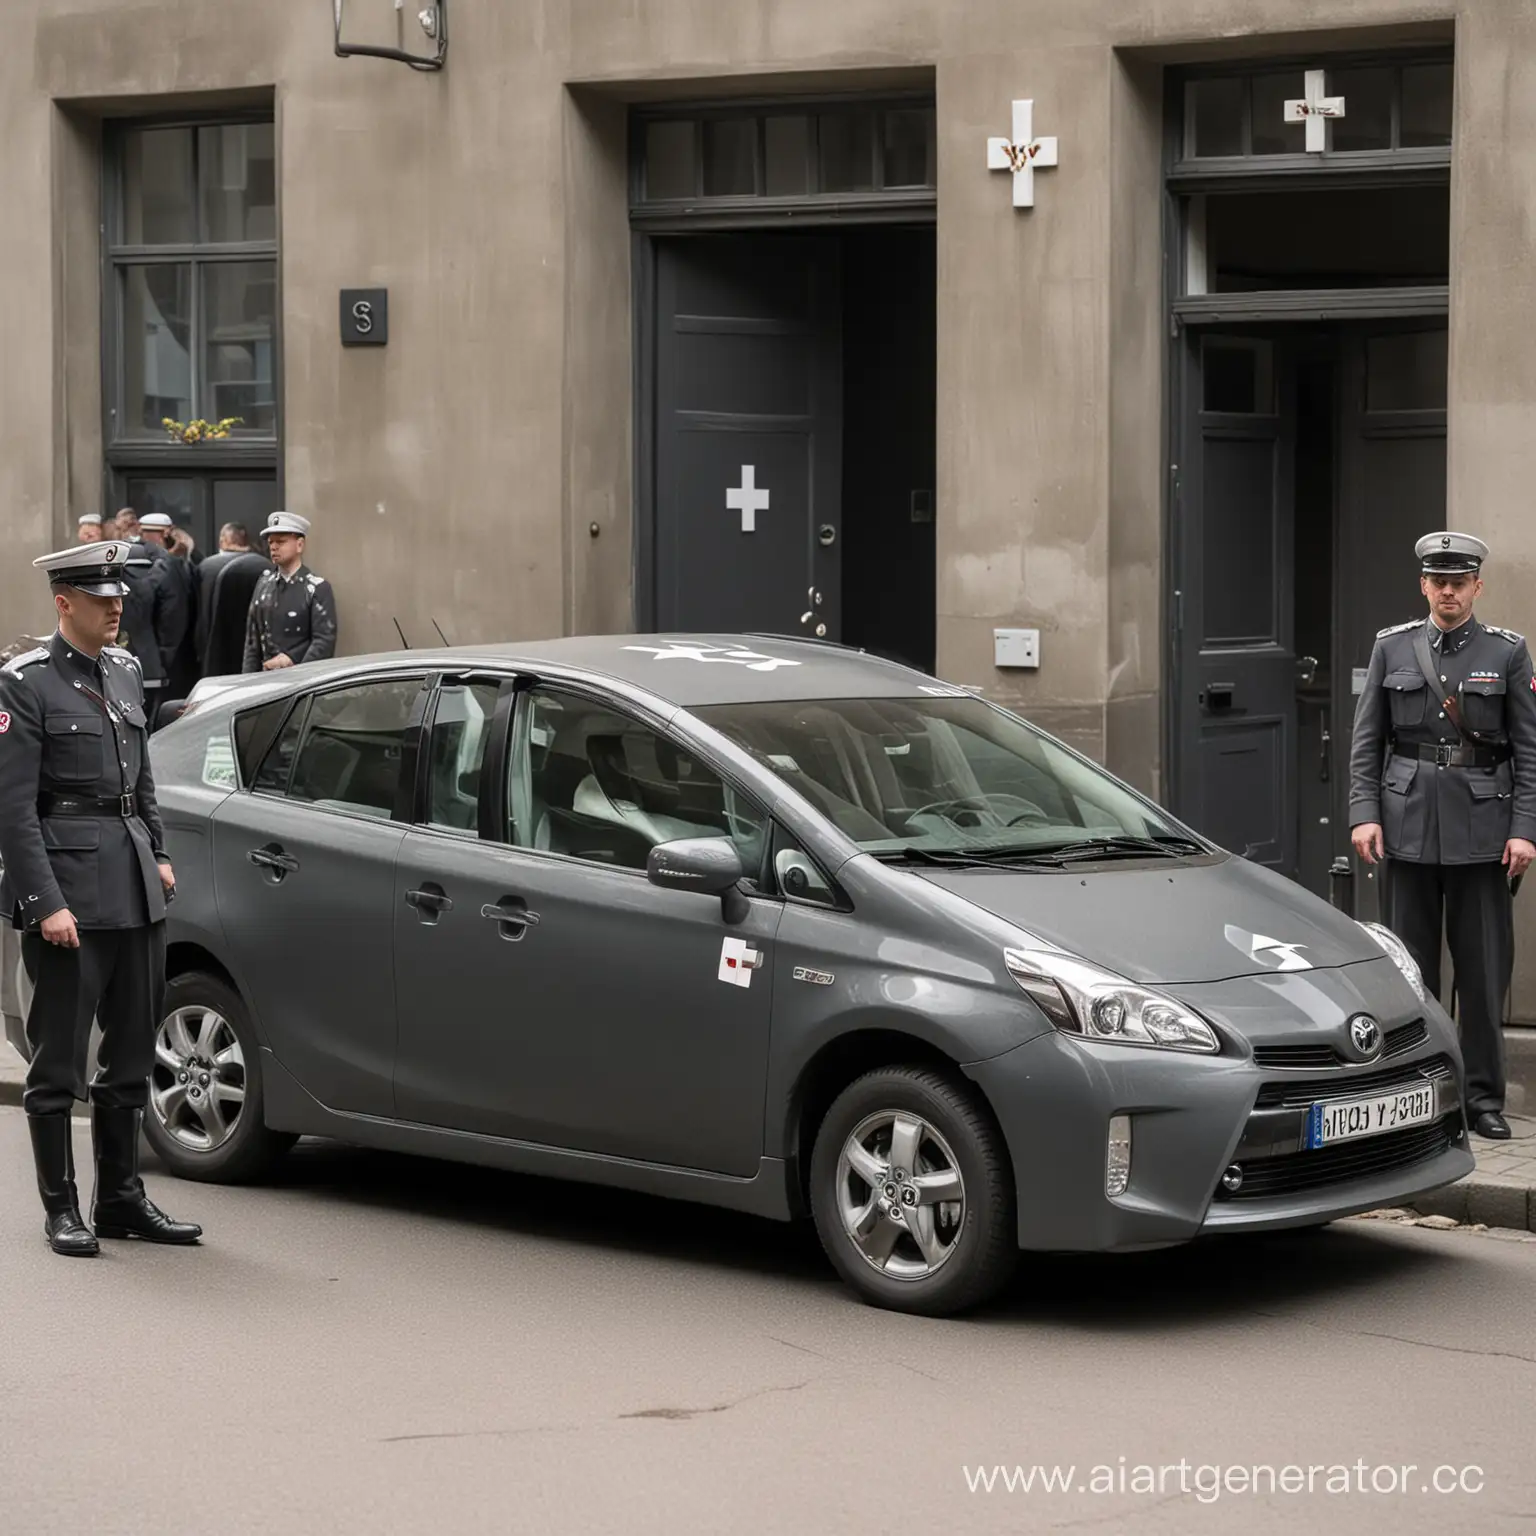 Toyota Prius темно-серого цвета, с немецким белым крестом на двери, в сеттинге нацисткой Германии, за рулем офицеры СС